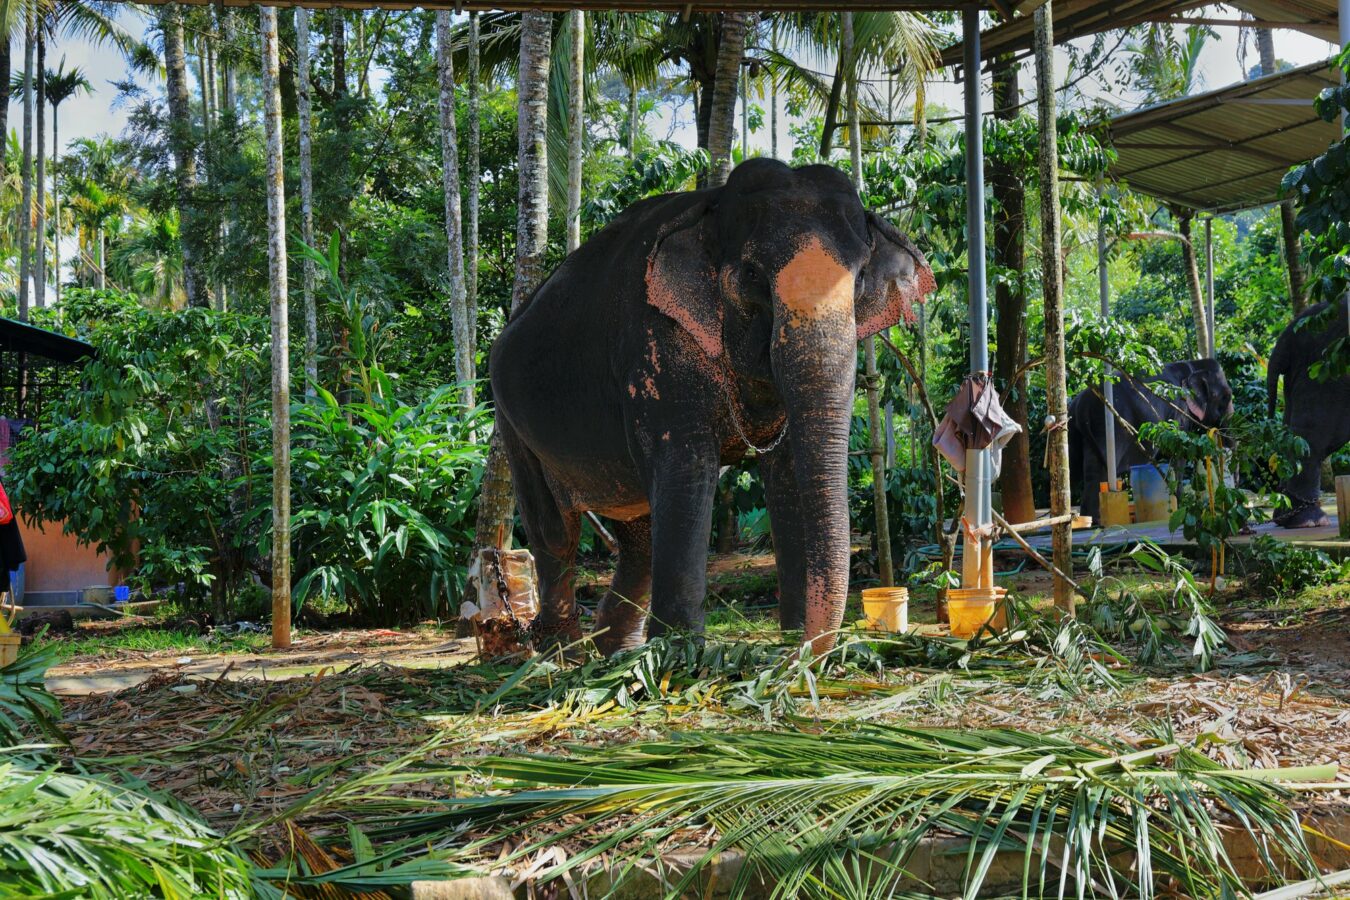 Elephants in Munnar, Kerala, India